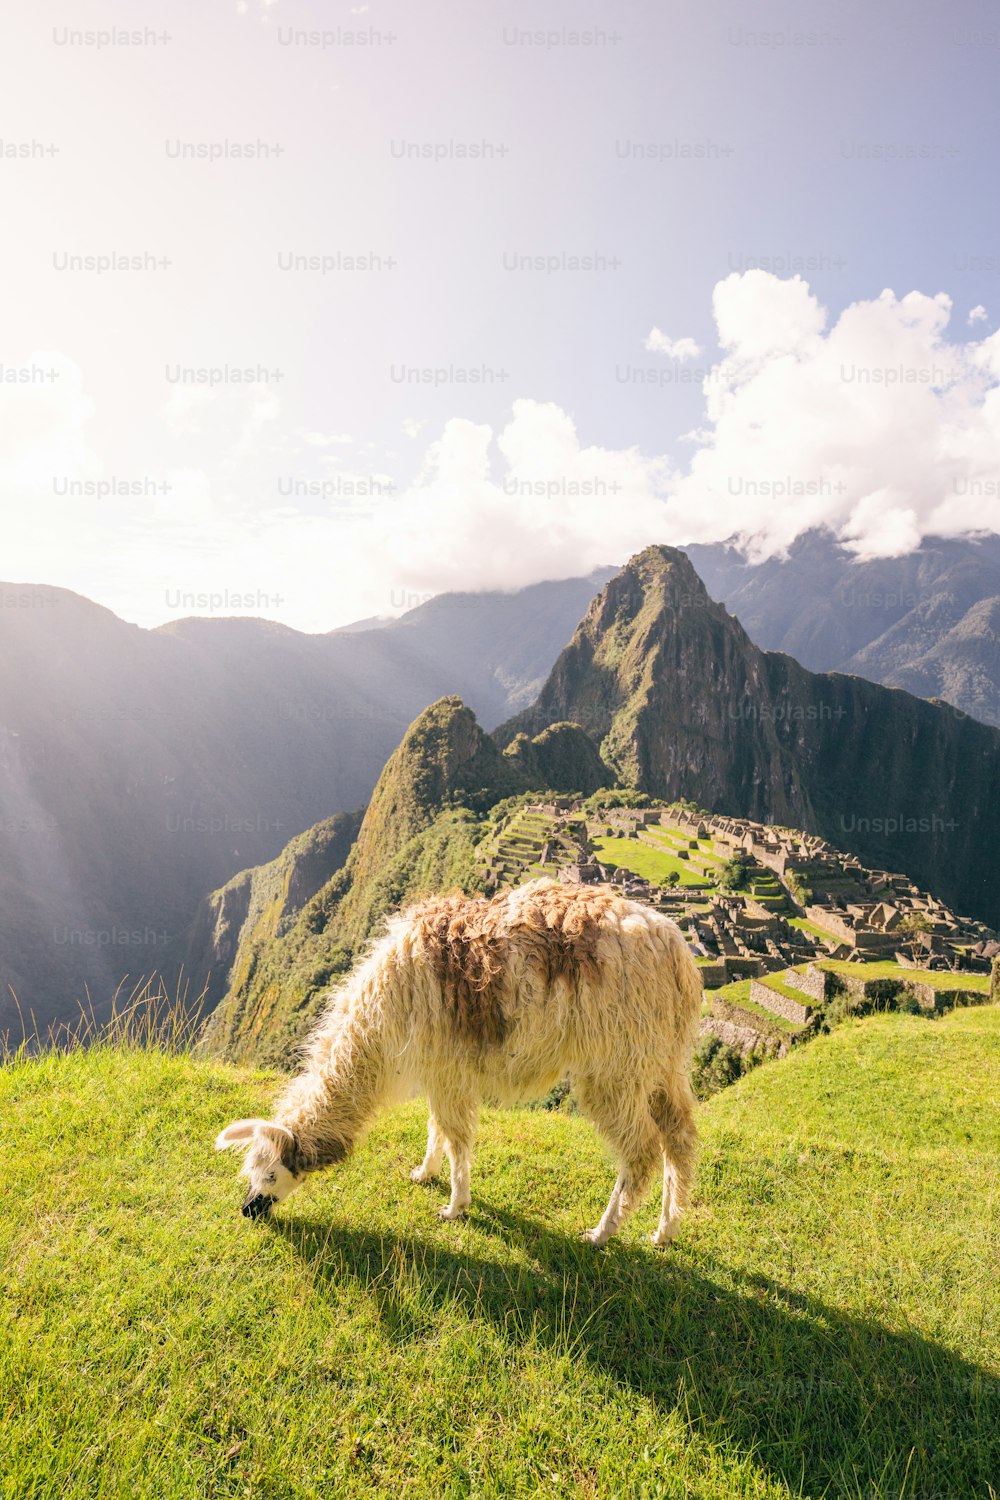 Ein Lama grast auf einer grasbewachsenen Wiese mit Bergen im Hintergrund